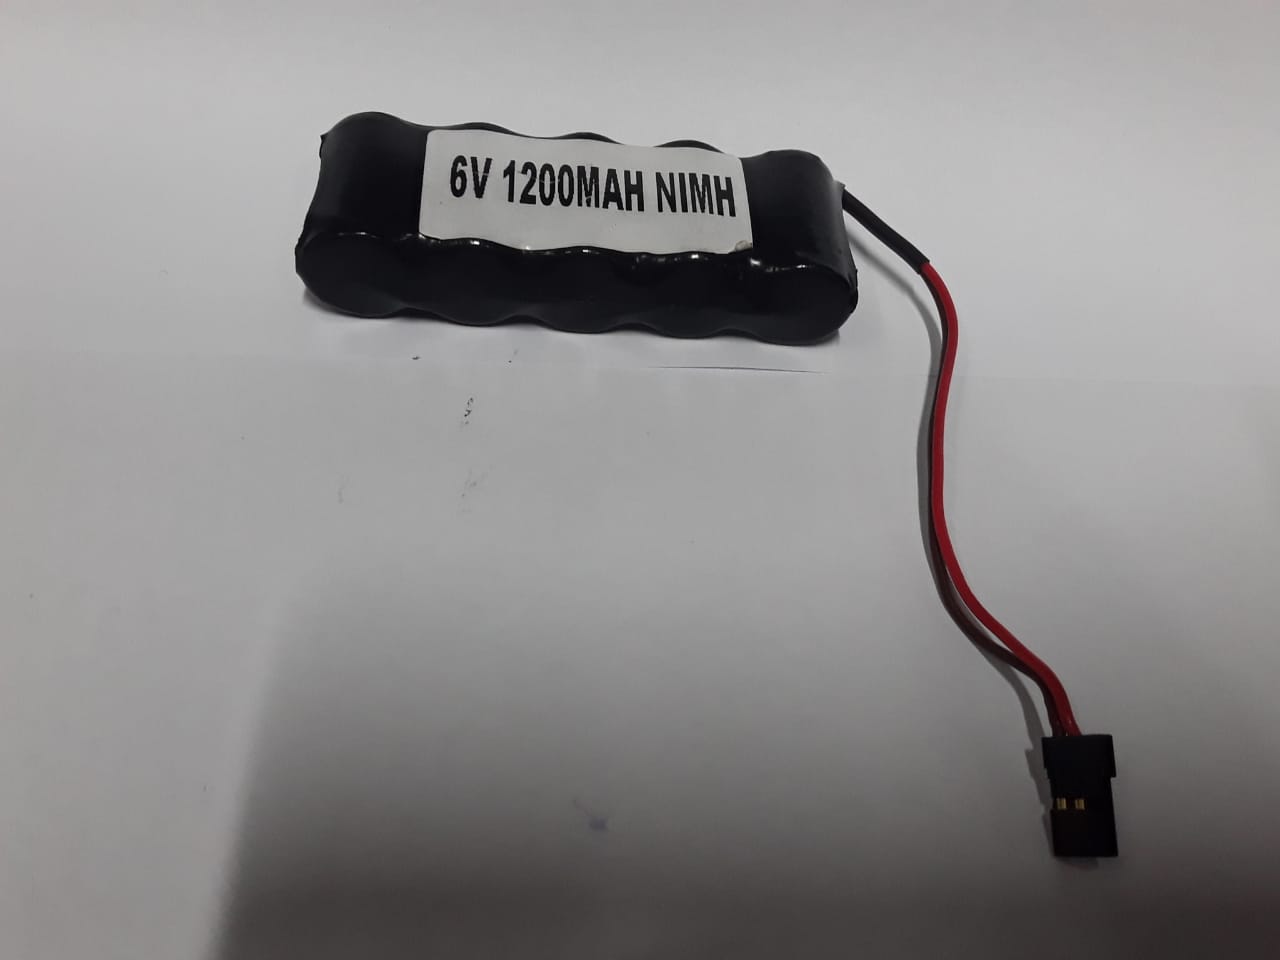 6V 1200Mah Nimh Battery Pack